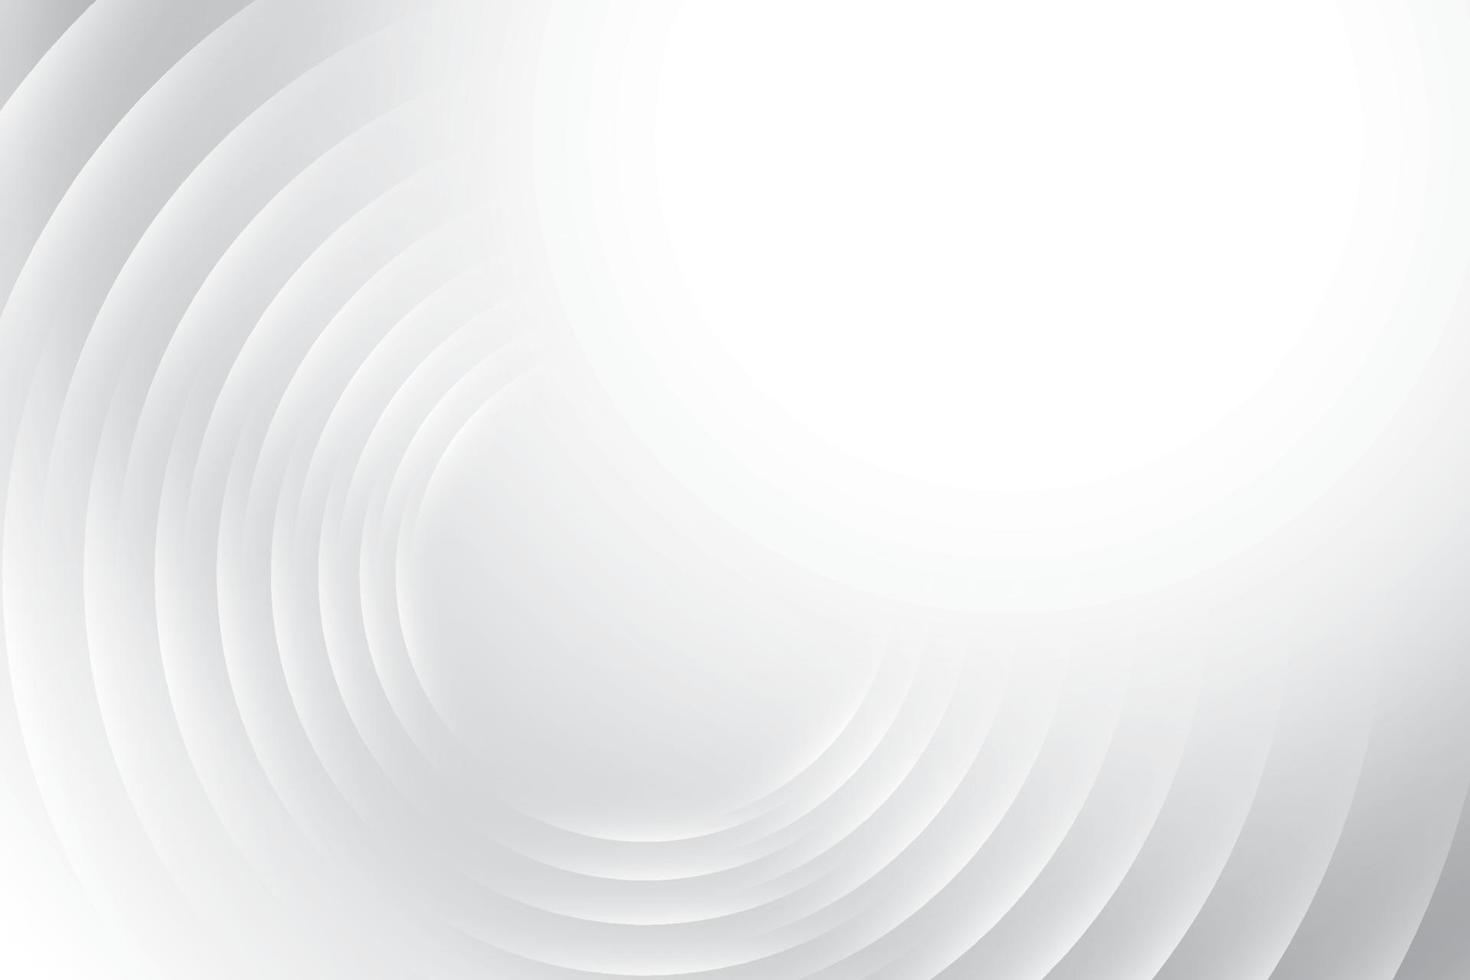 abstrakt vit och grå Färg, modern design Ränder bakgrund med geometrisk runda form. vektor illustration.